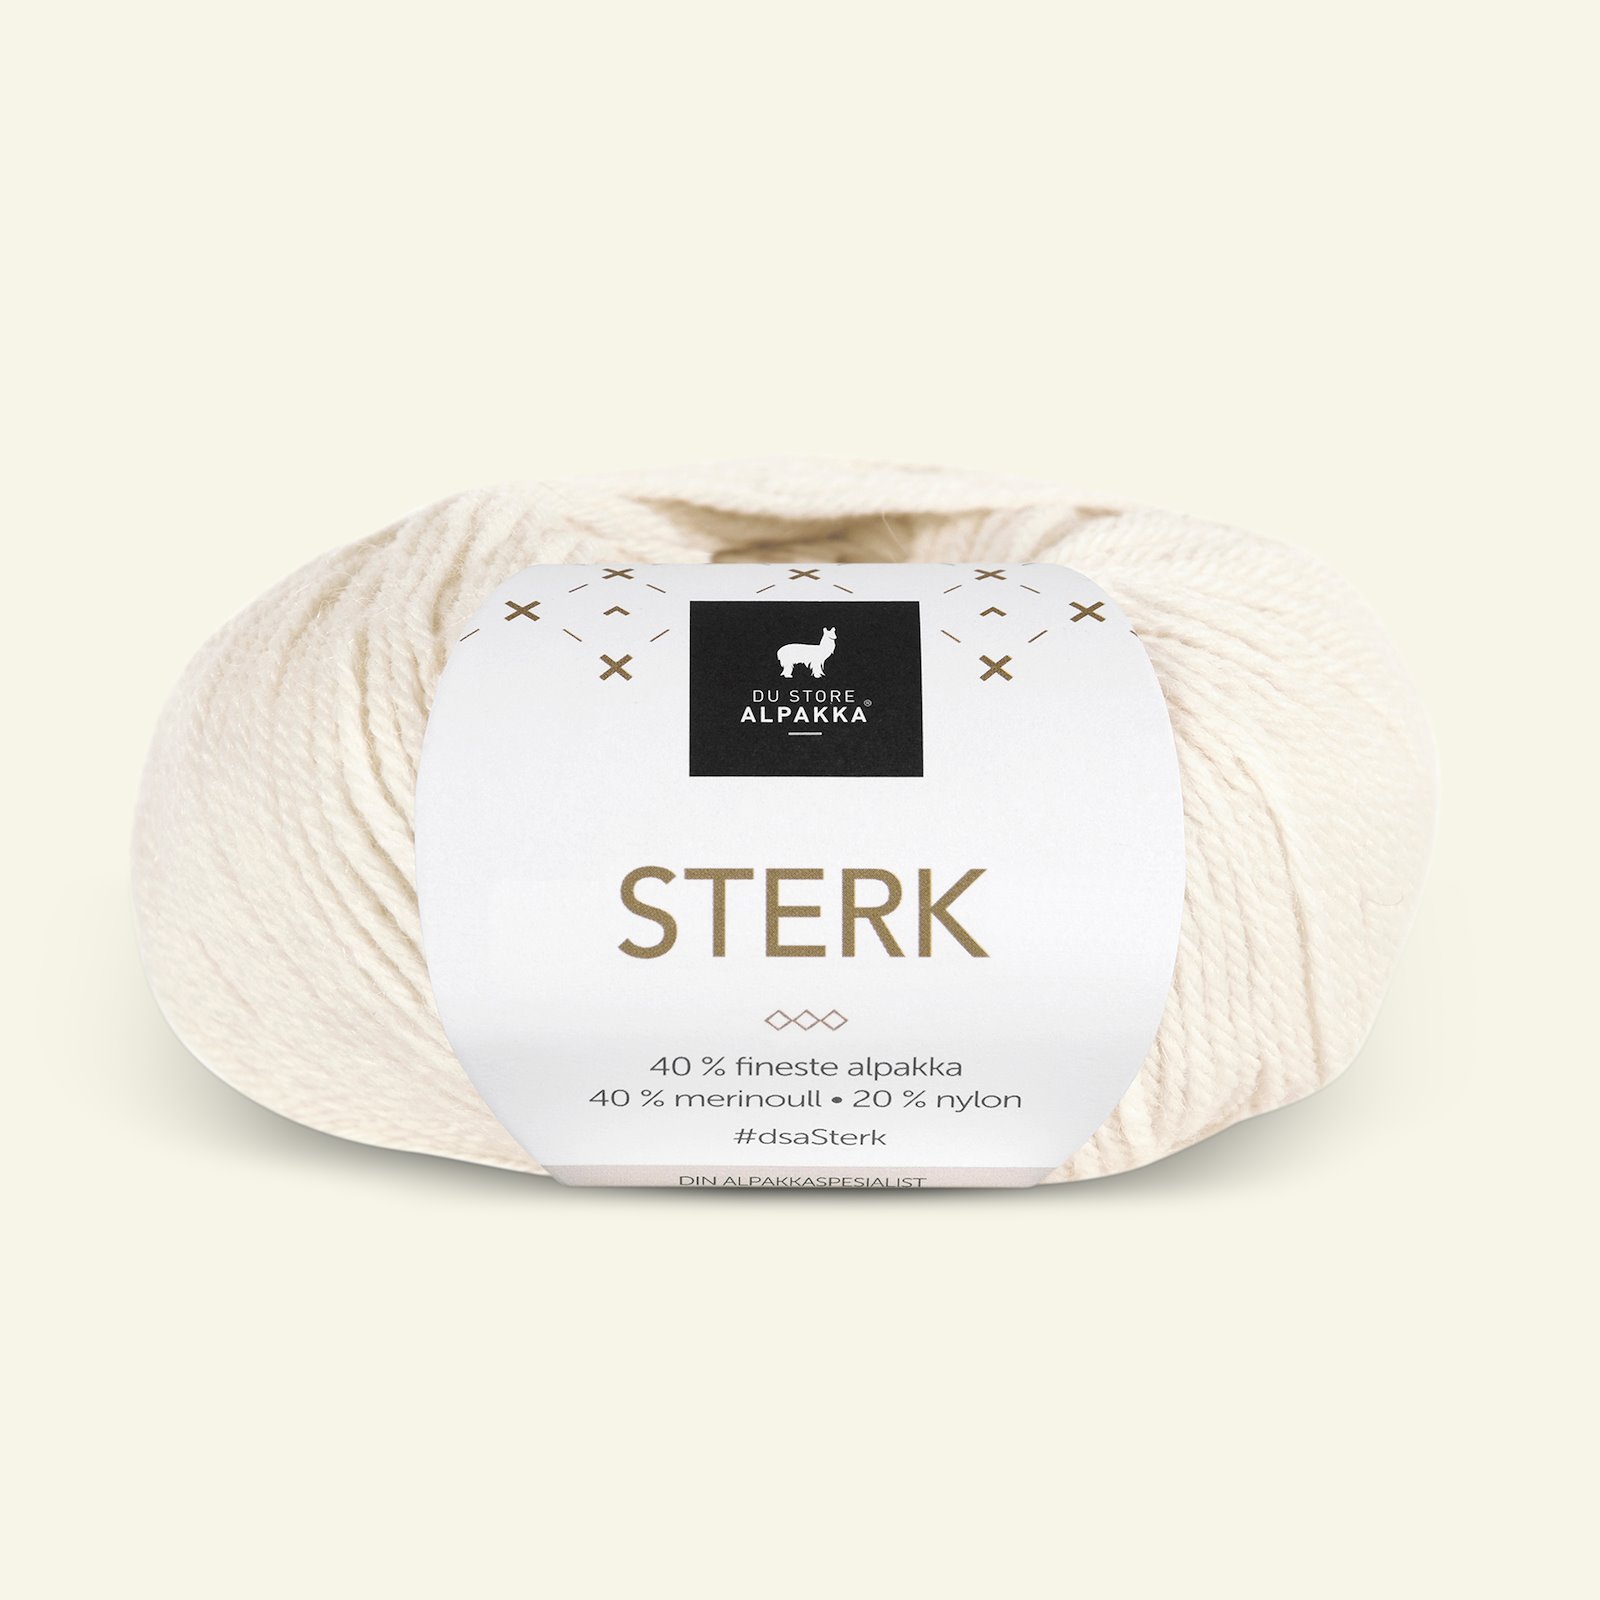 Du Store Alpakka, alpaca merino mixed yarn "Sterk", white (851) 90000677_pack